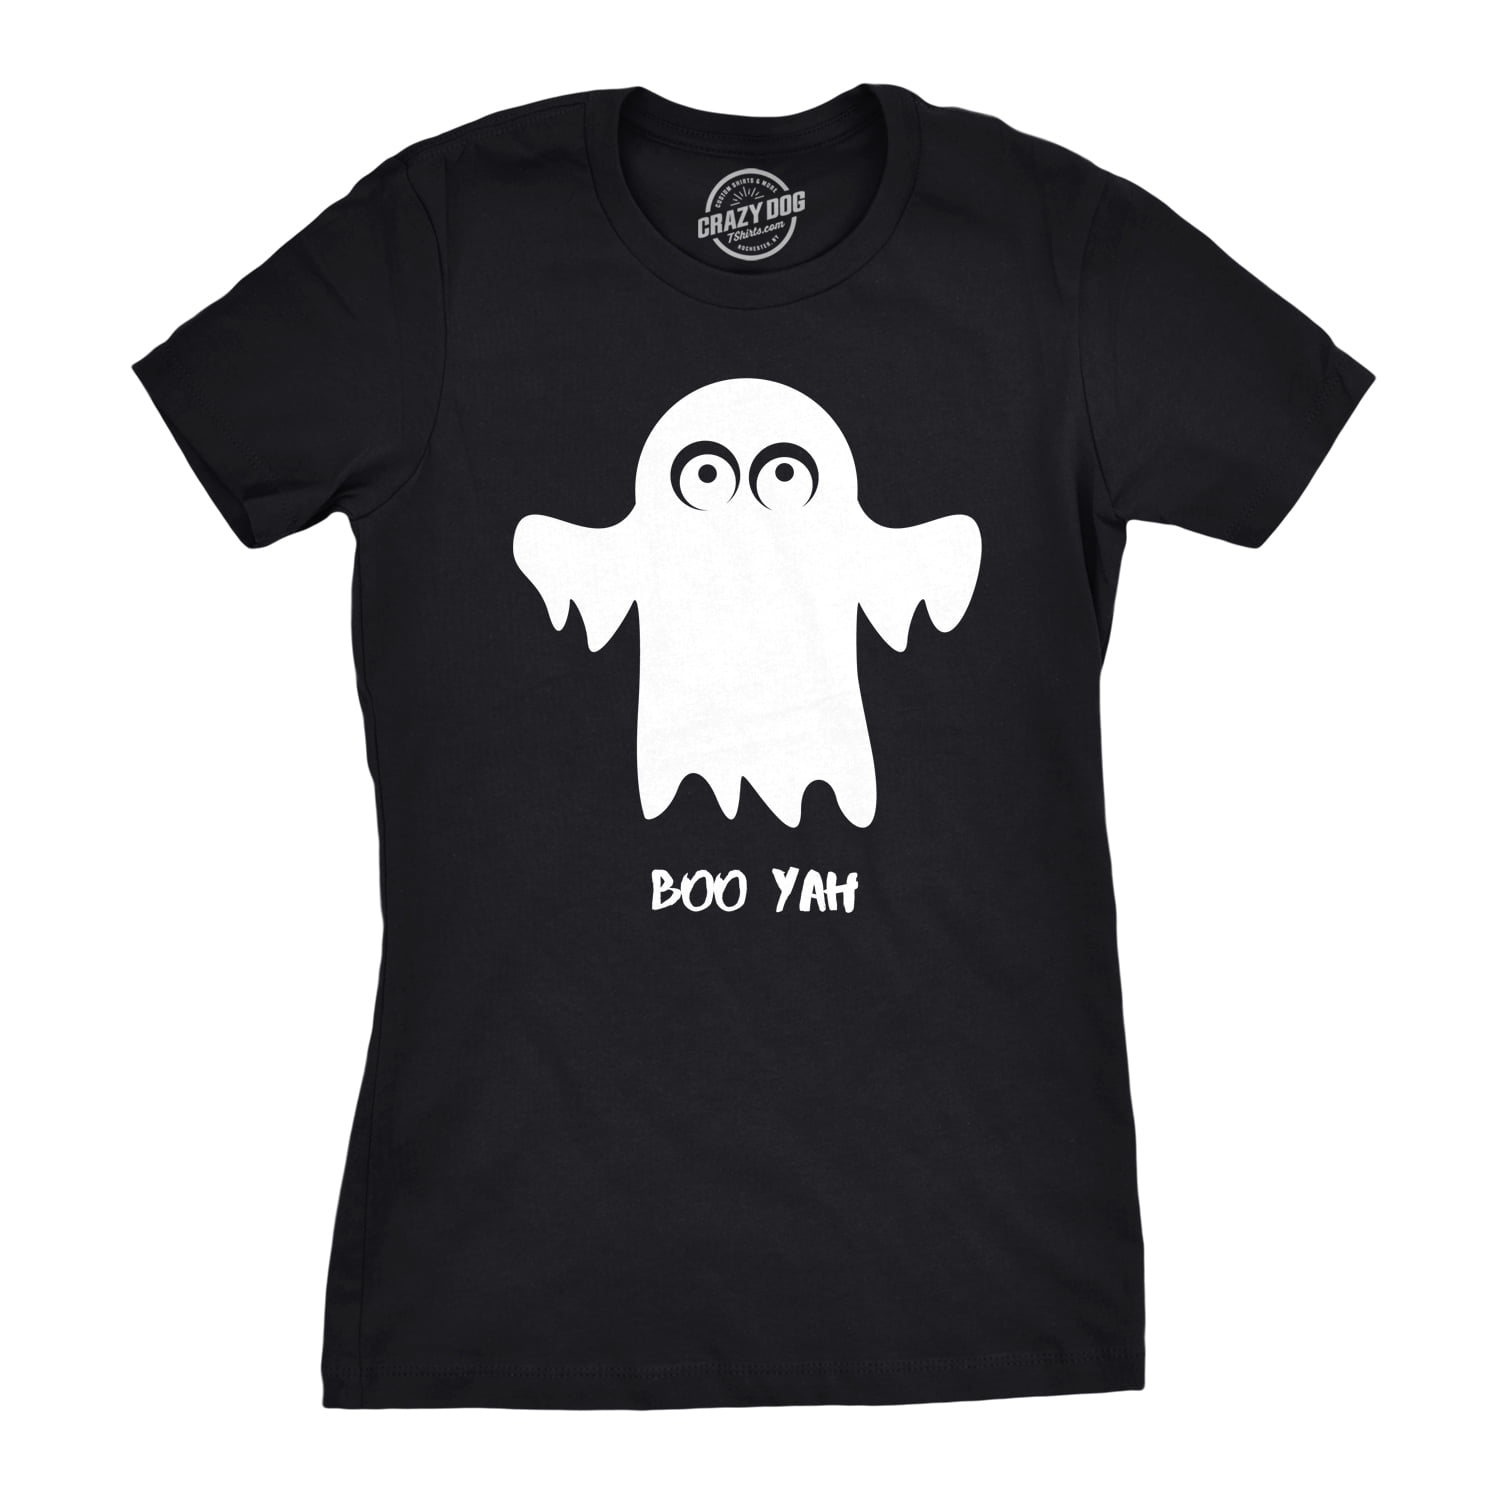 Unisex T-Shirt Women's T Shirt Ghost Shirt Women's Ghost Spooky Halloween Tshirt Womens Fall Shirt Let's Get Spooky